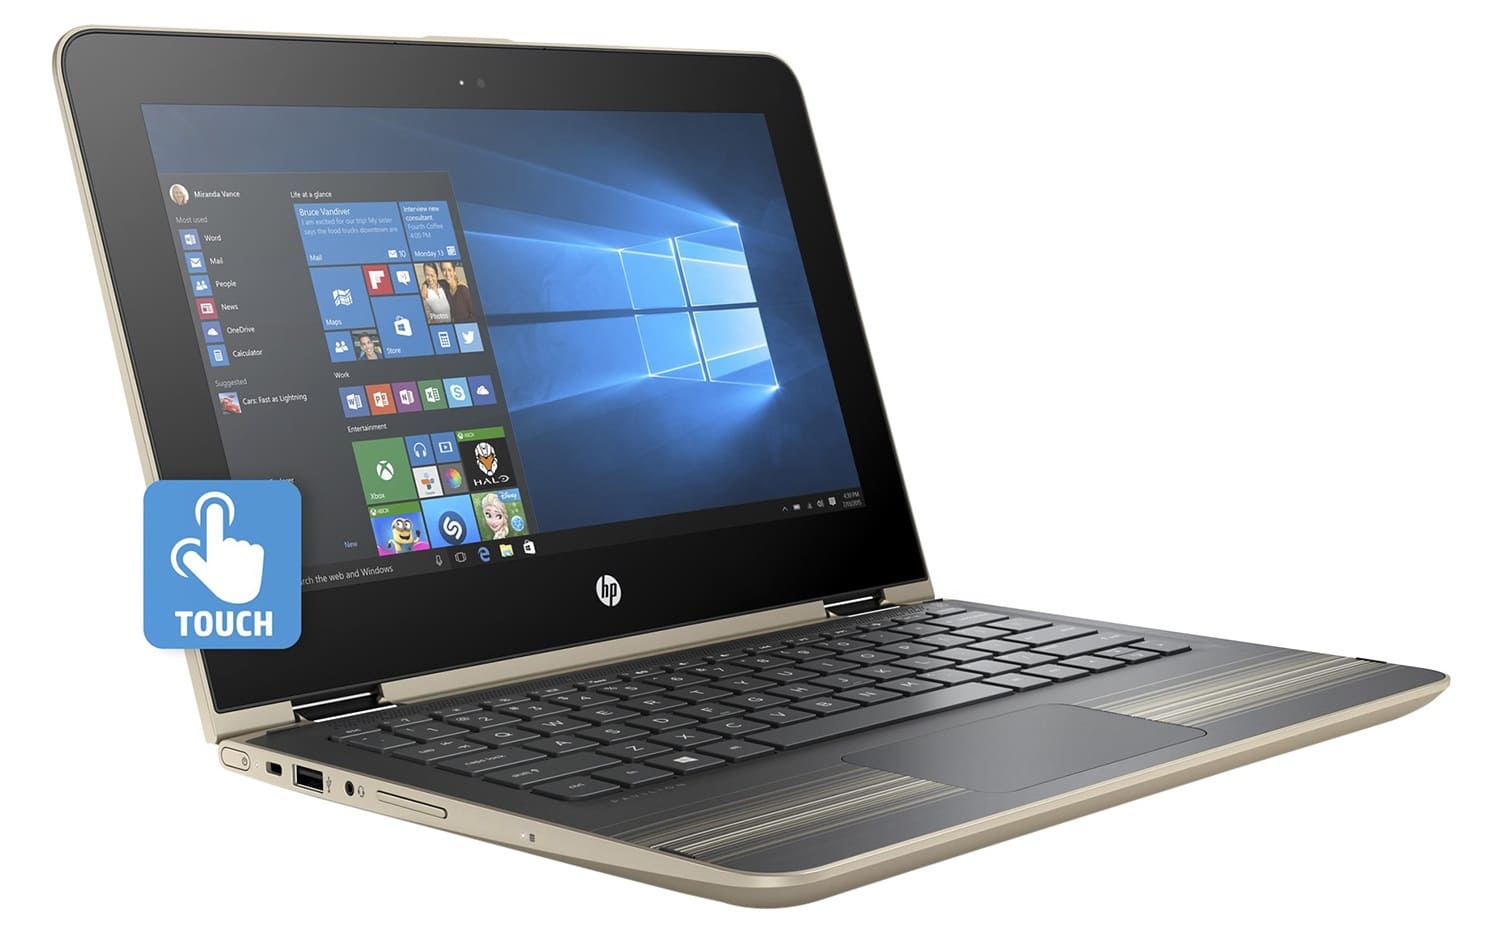 Laptop Lenovo HP Pavilion X360 13-U040TU X3C29PA: Thiết kế hoàn hảo, hiệu suất vượt trội